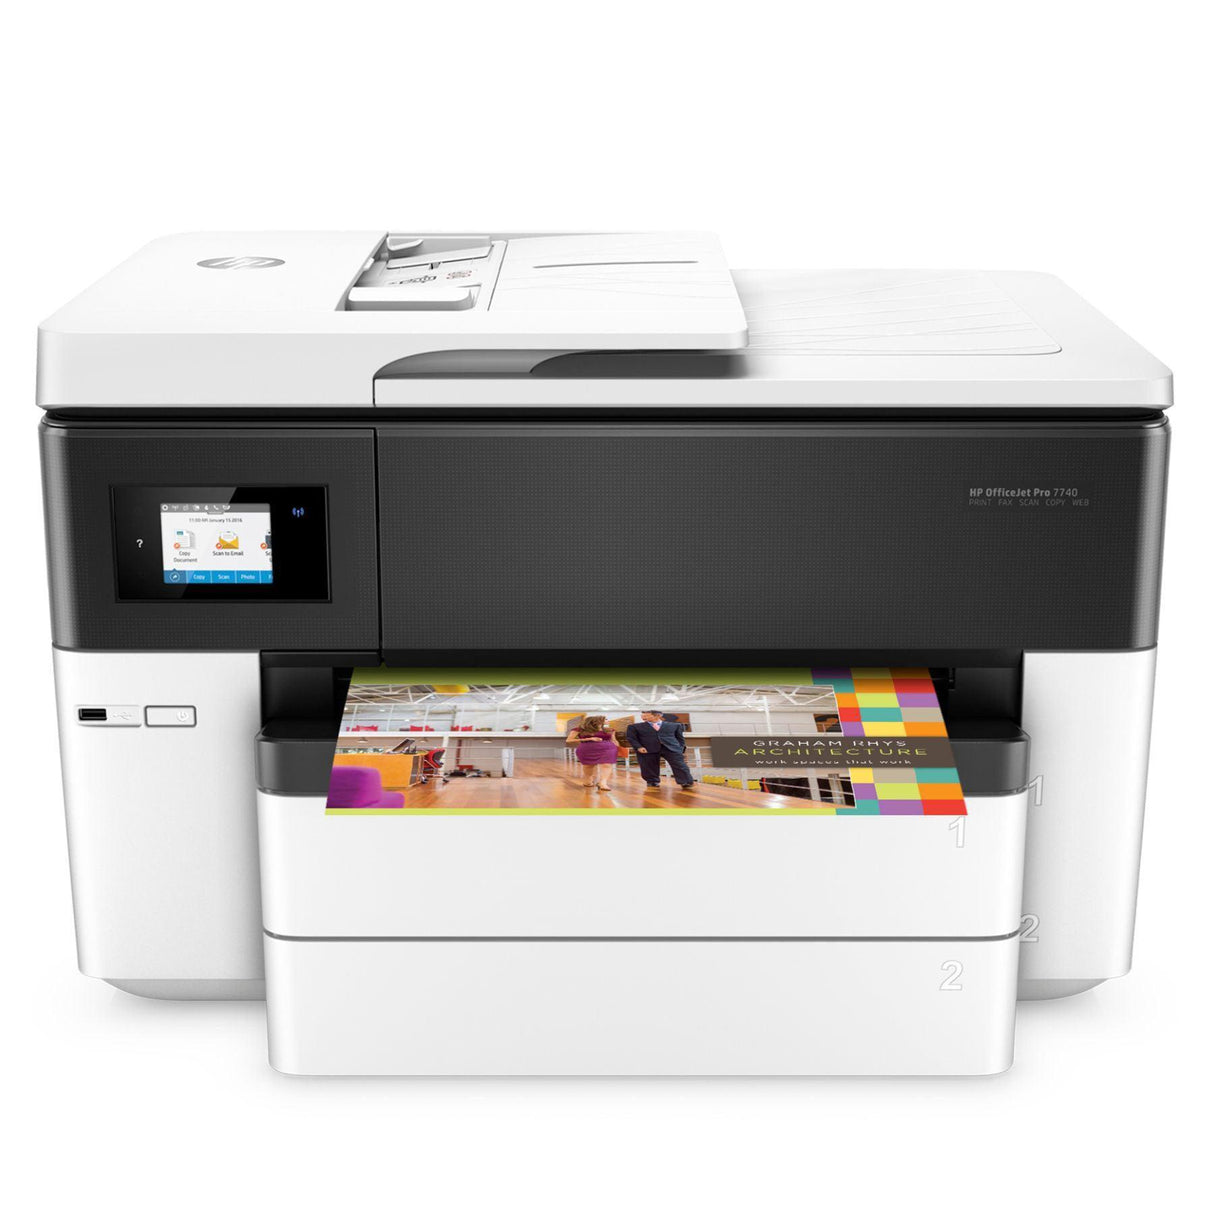 Impresora Hp Officejet Pro 7740, Ideal para Formatos Grandes 11 X 17, incluye Dos Bandejas